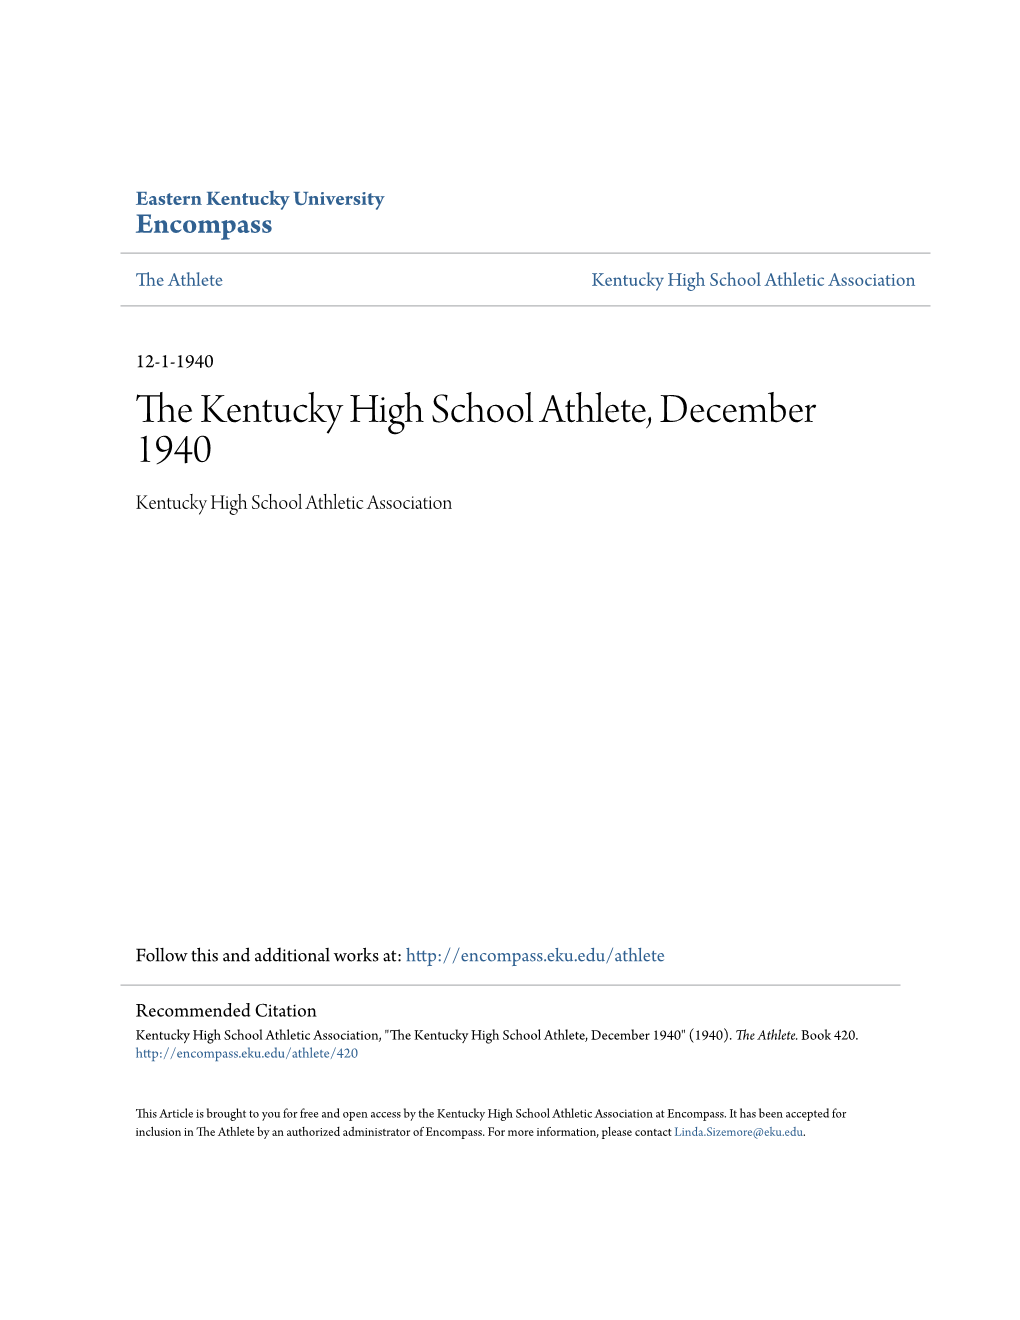 The Kentucky High School Athlete, December 1940 Kentucky High School Athletic Association